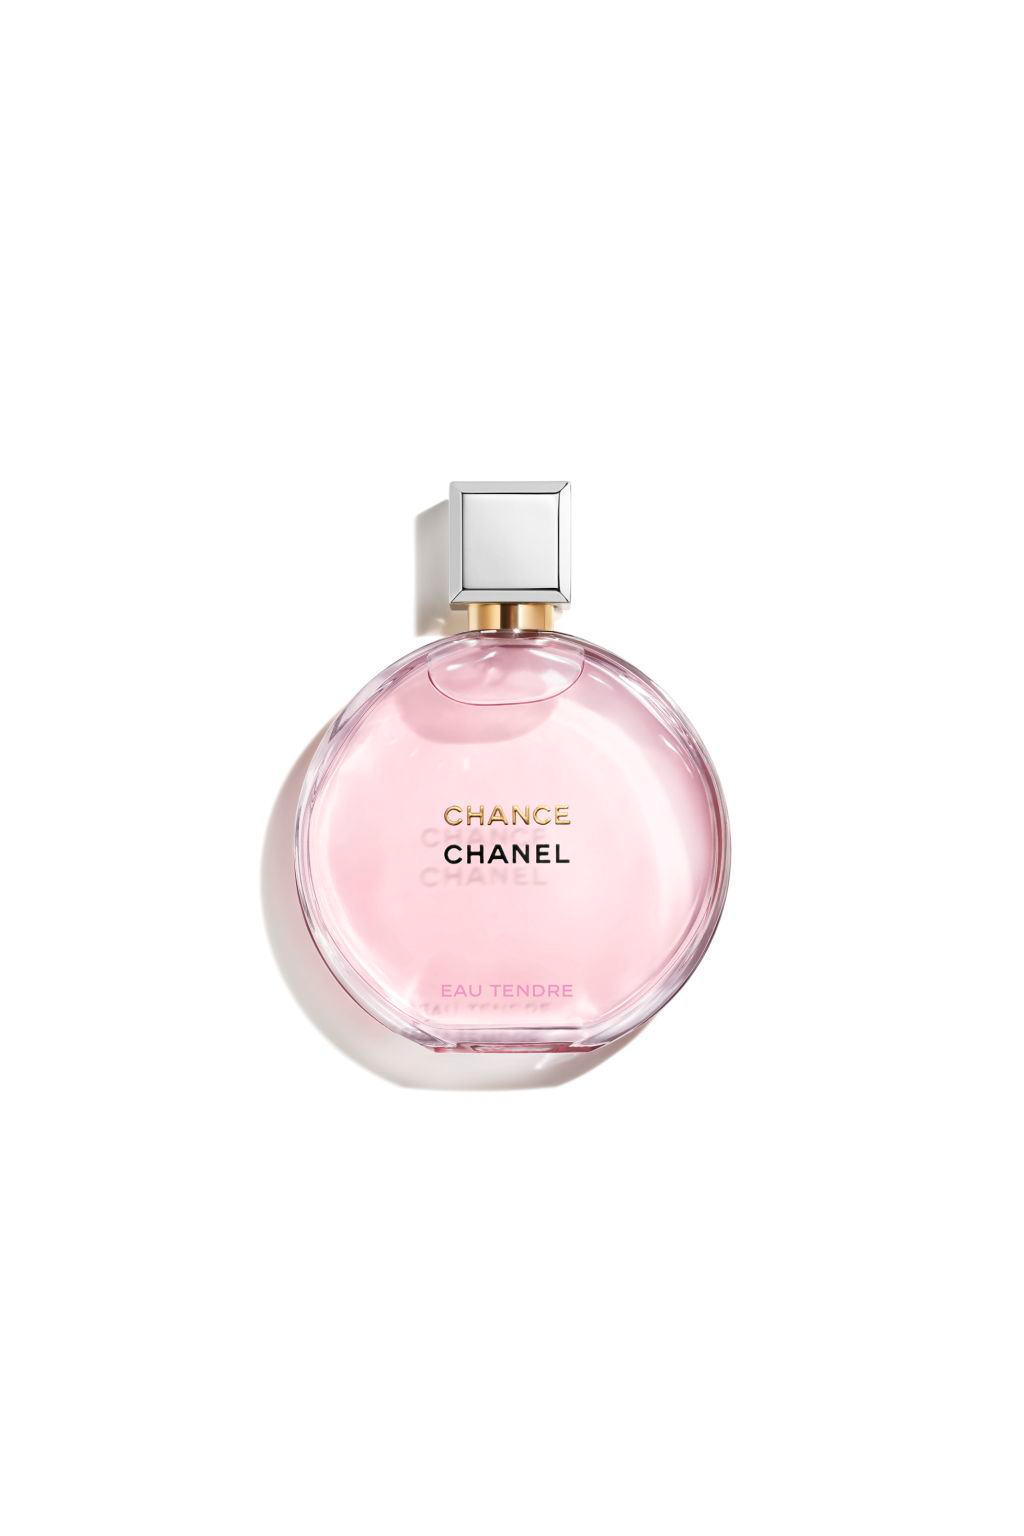 Buy CHANEL CHANCE EAU TENDRE Eau De Parfum Spray for